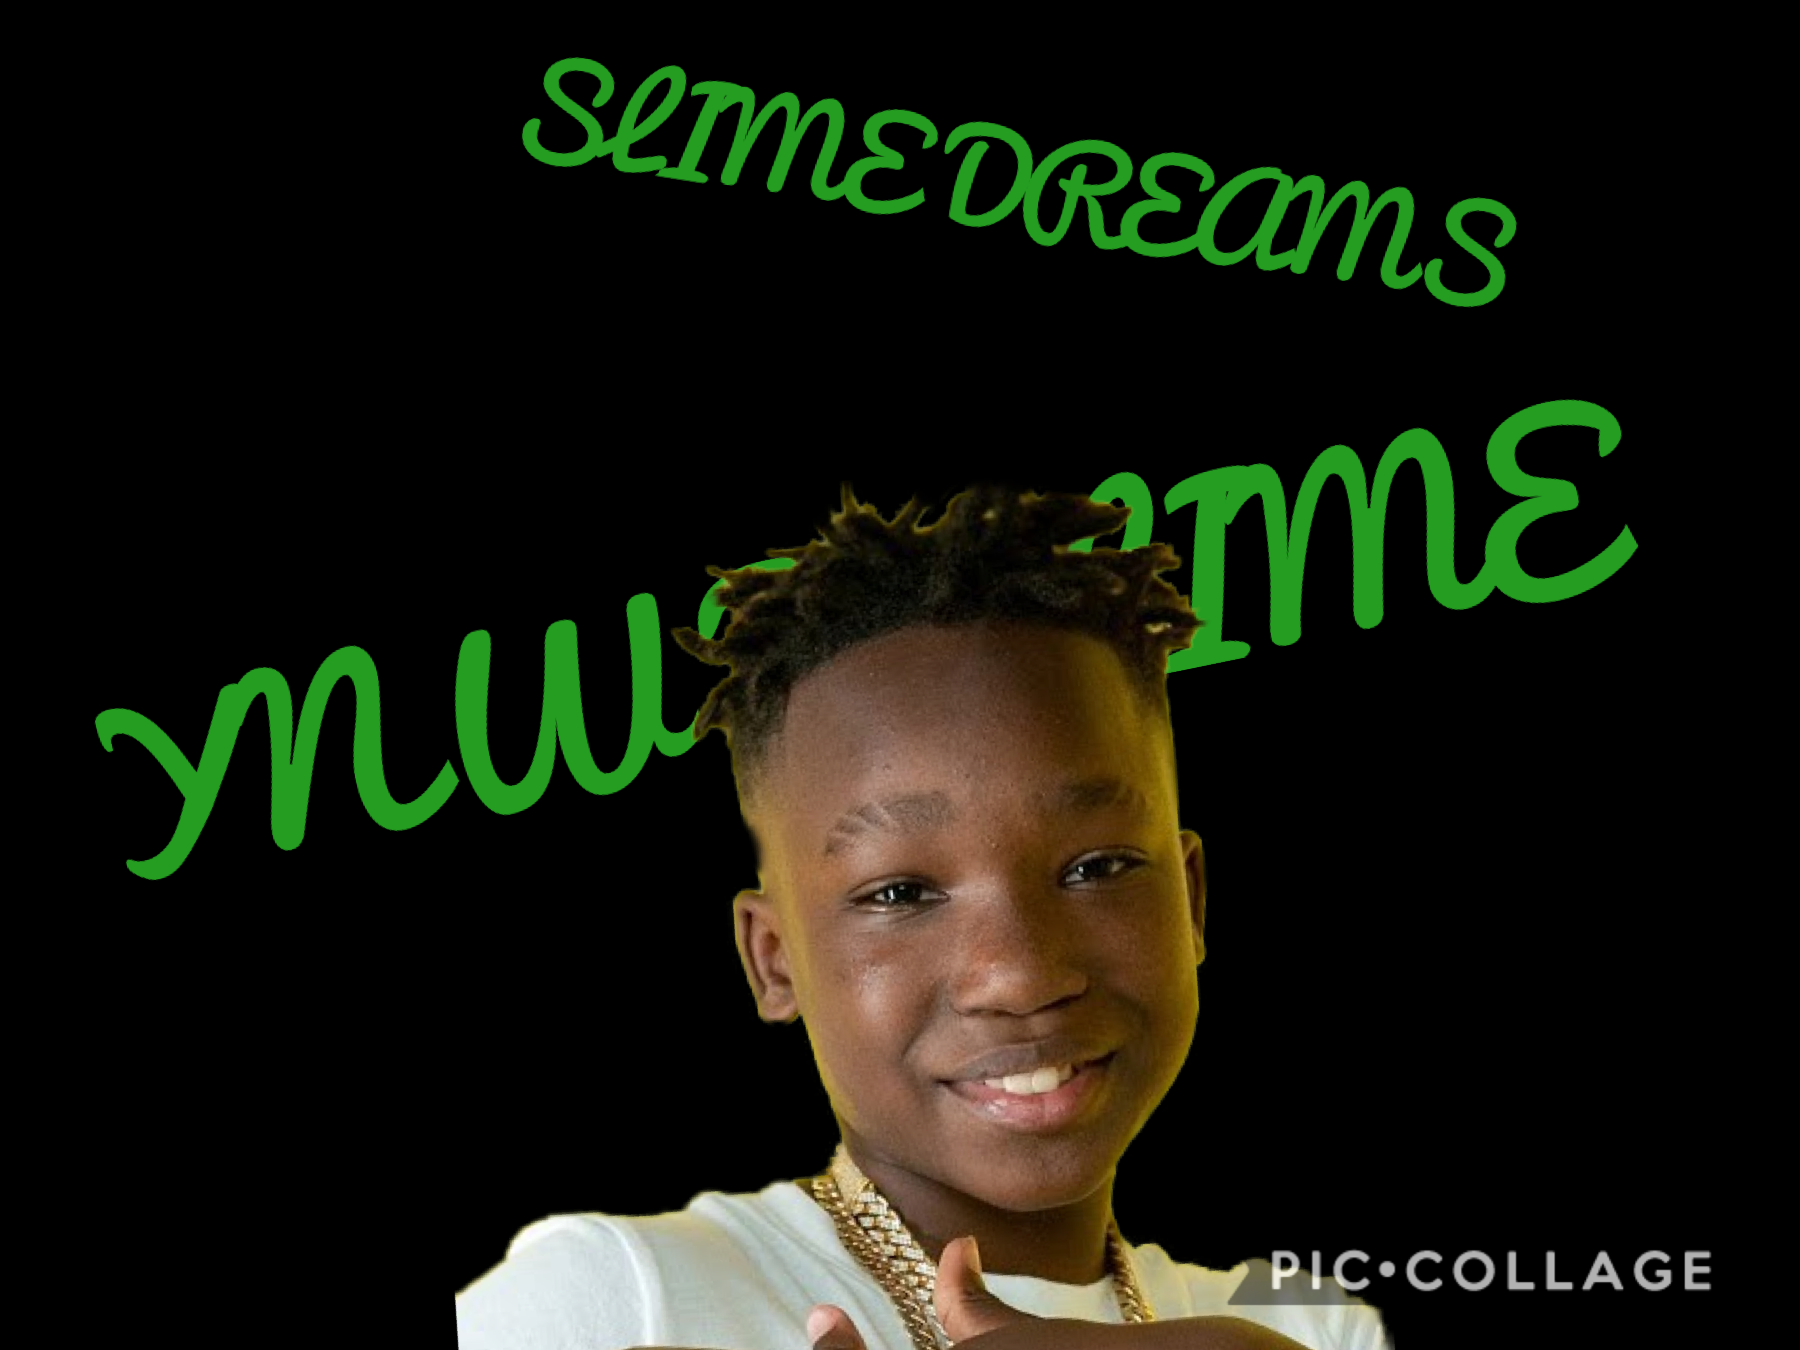 I love slime dreams by ynwbslime